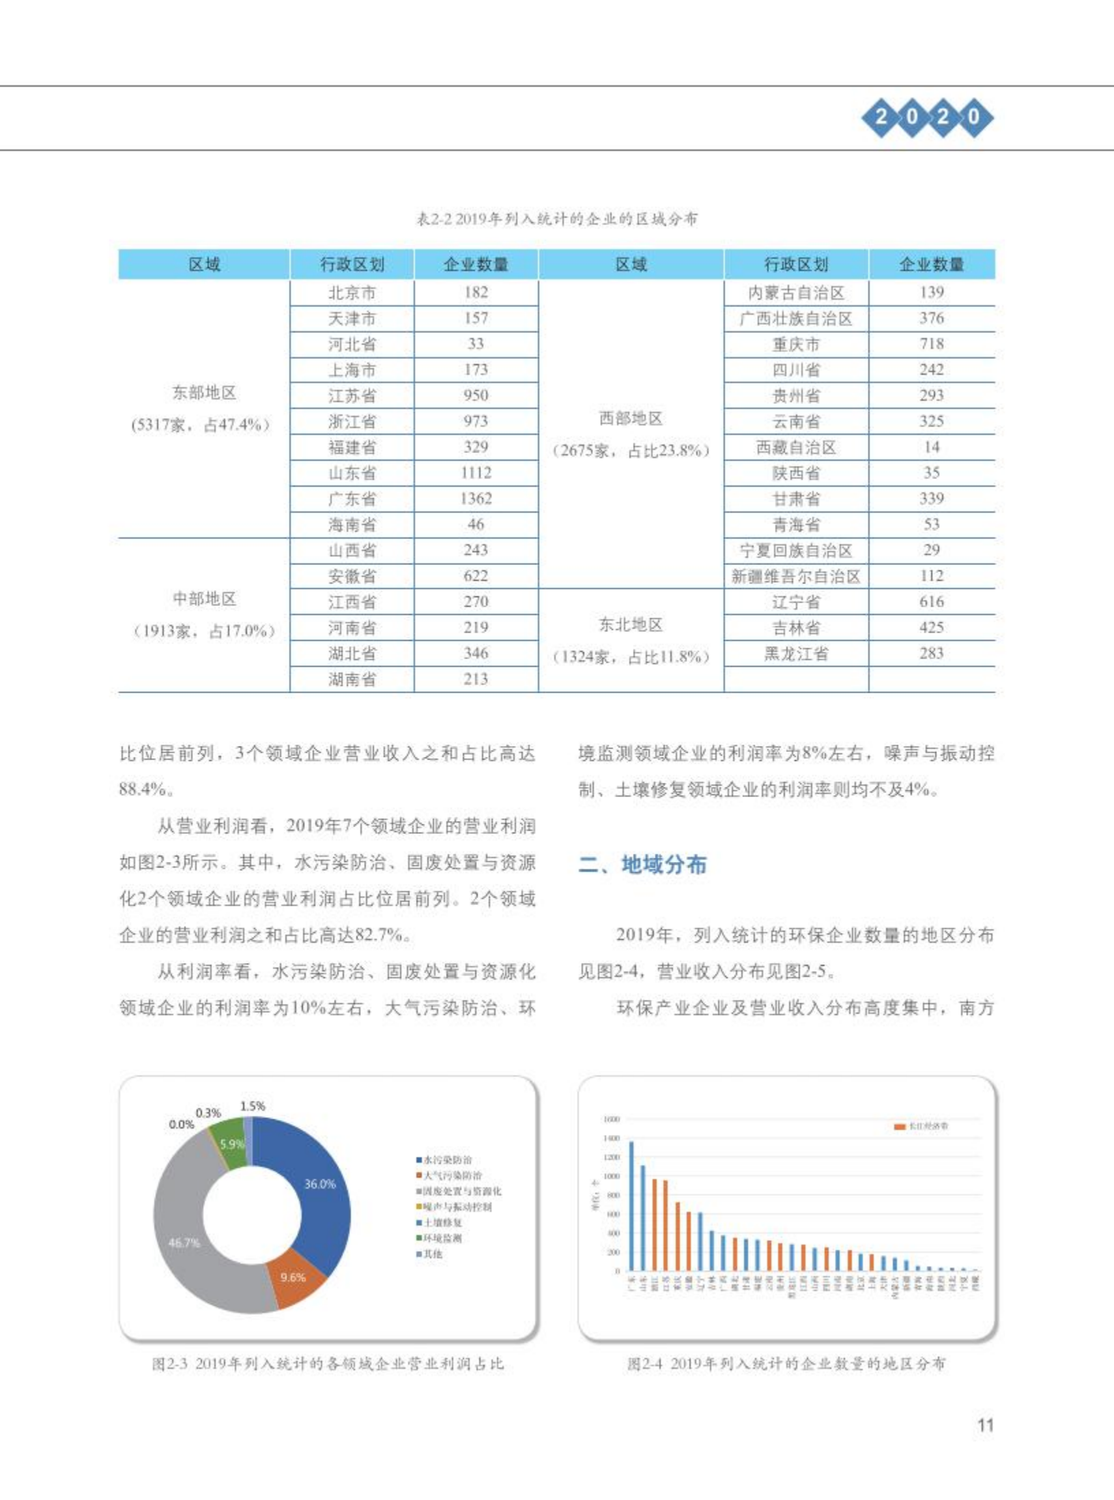 【2020】中国环保产业发展状况报告_12.png